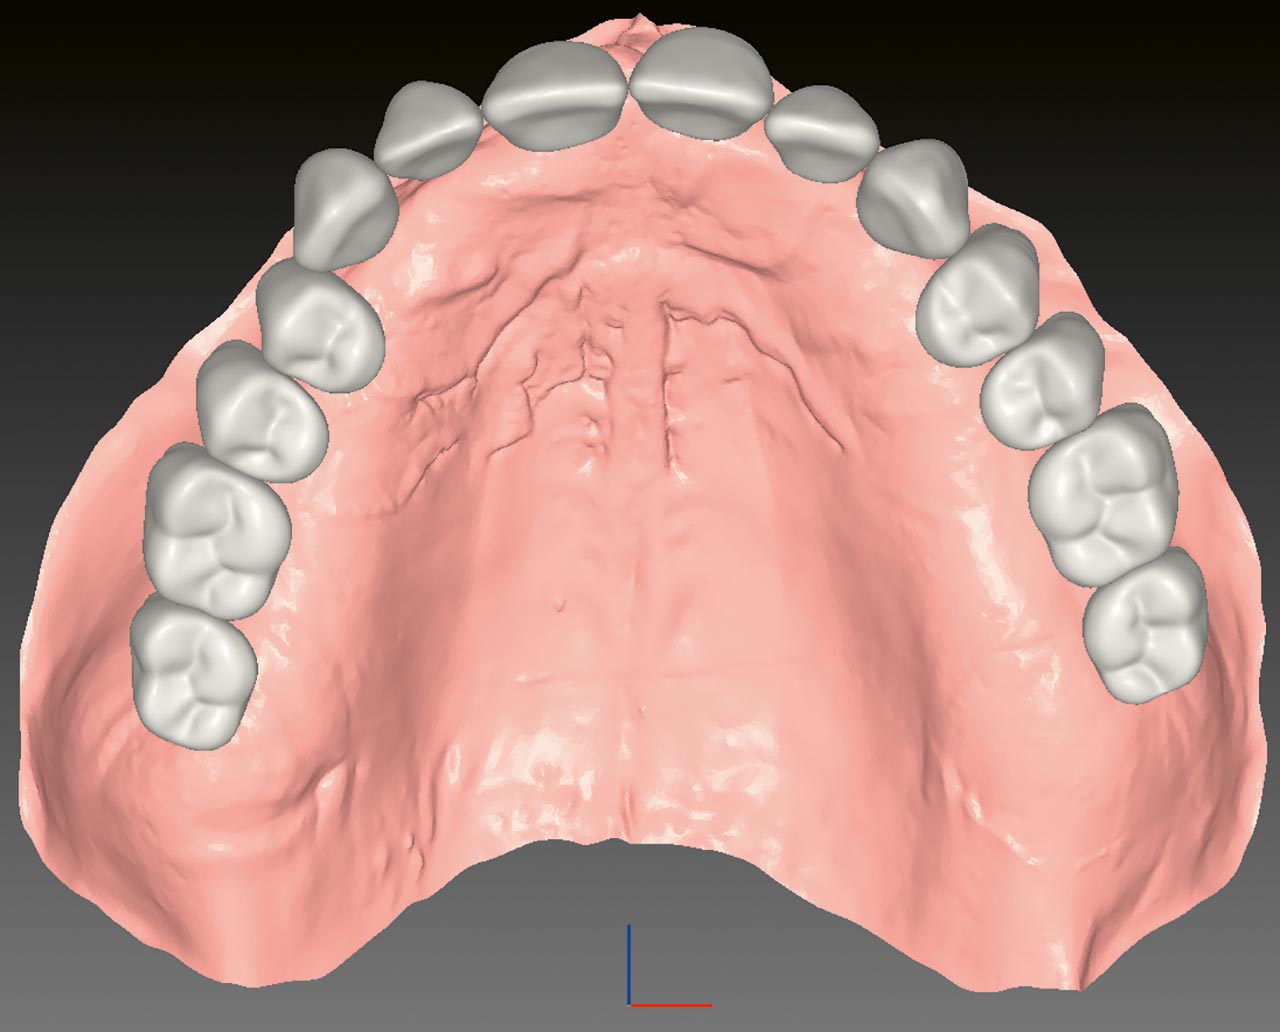 Abb. 4 Digitale Darstellung der Zahnreihen der Oberkieferaufstellung.